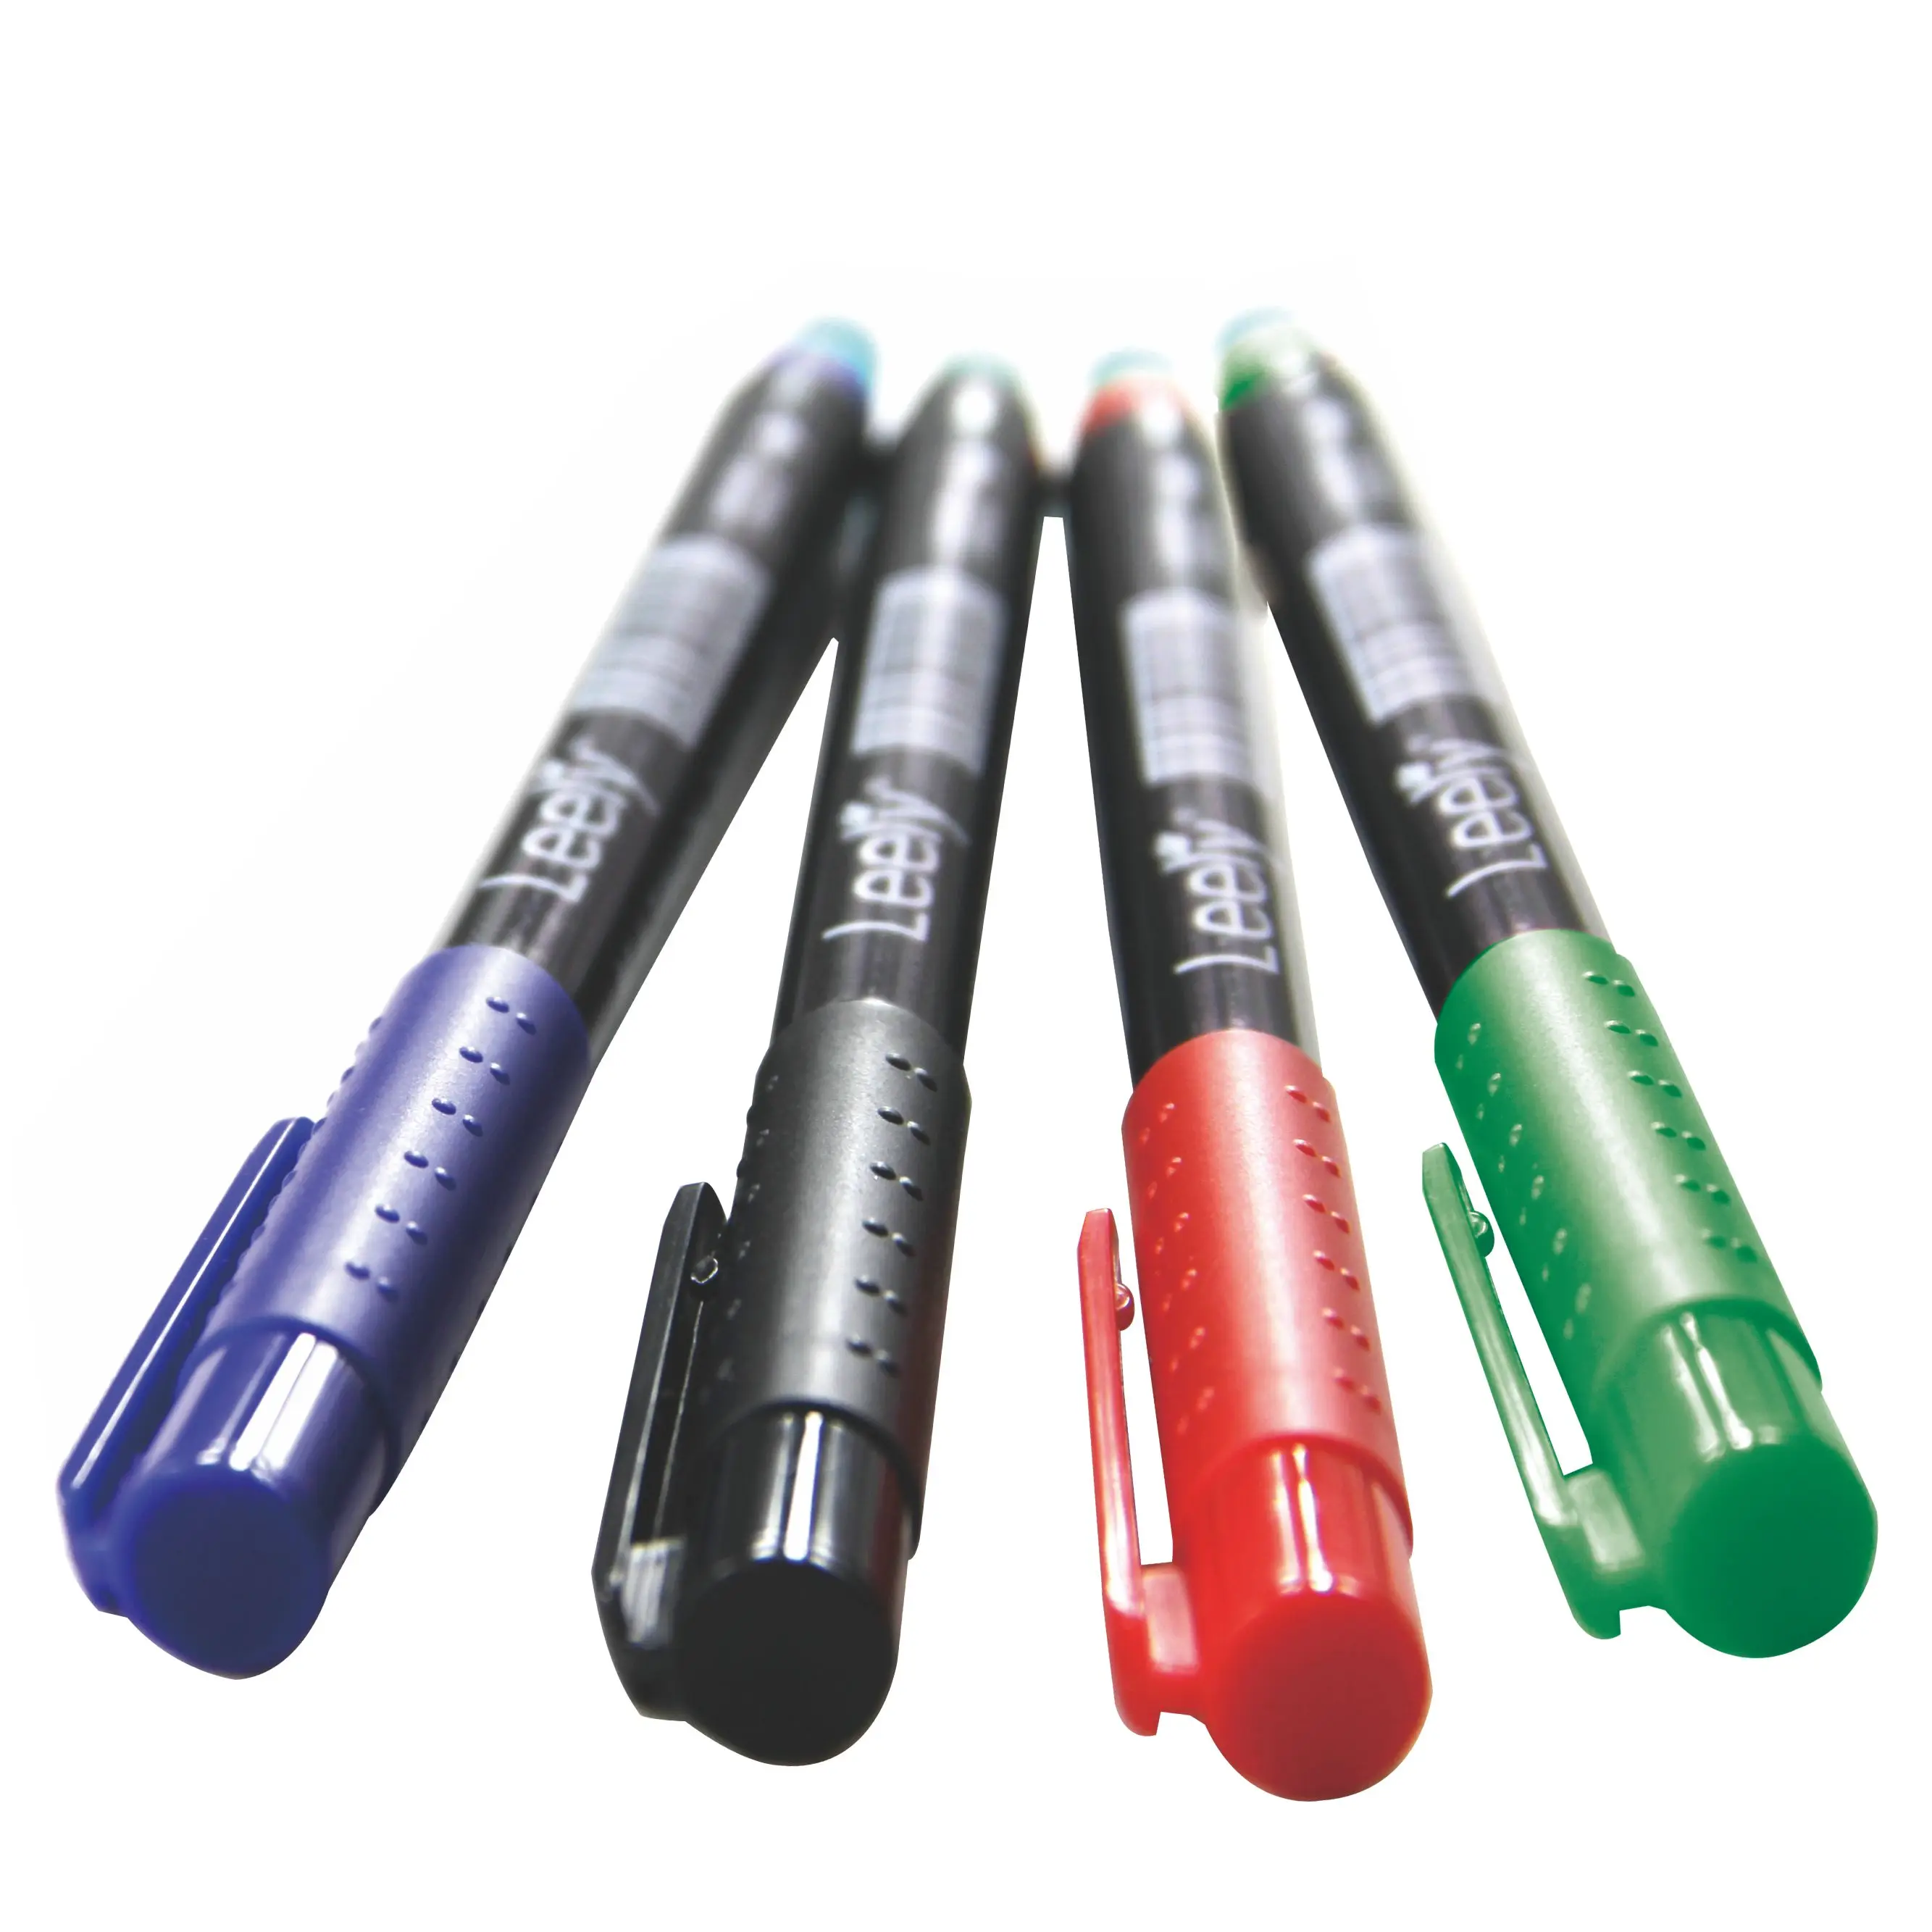 Tracing Impression Pen - Marcador de la Piel (Importado de Japon